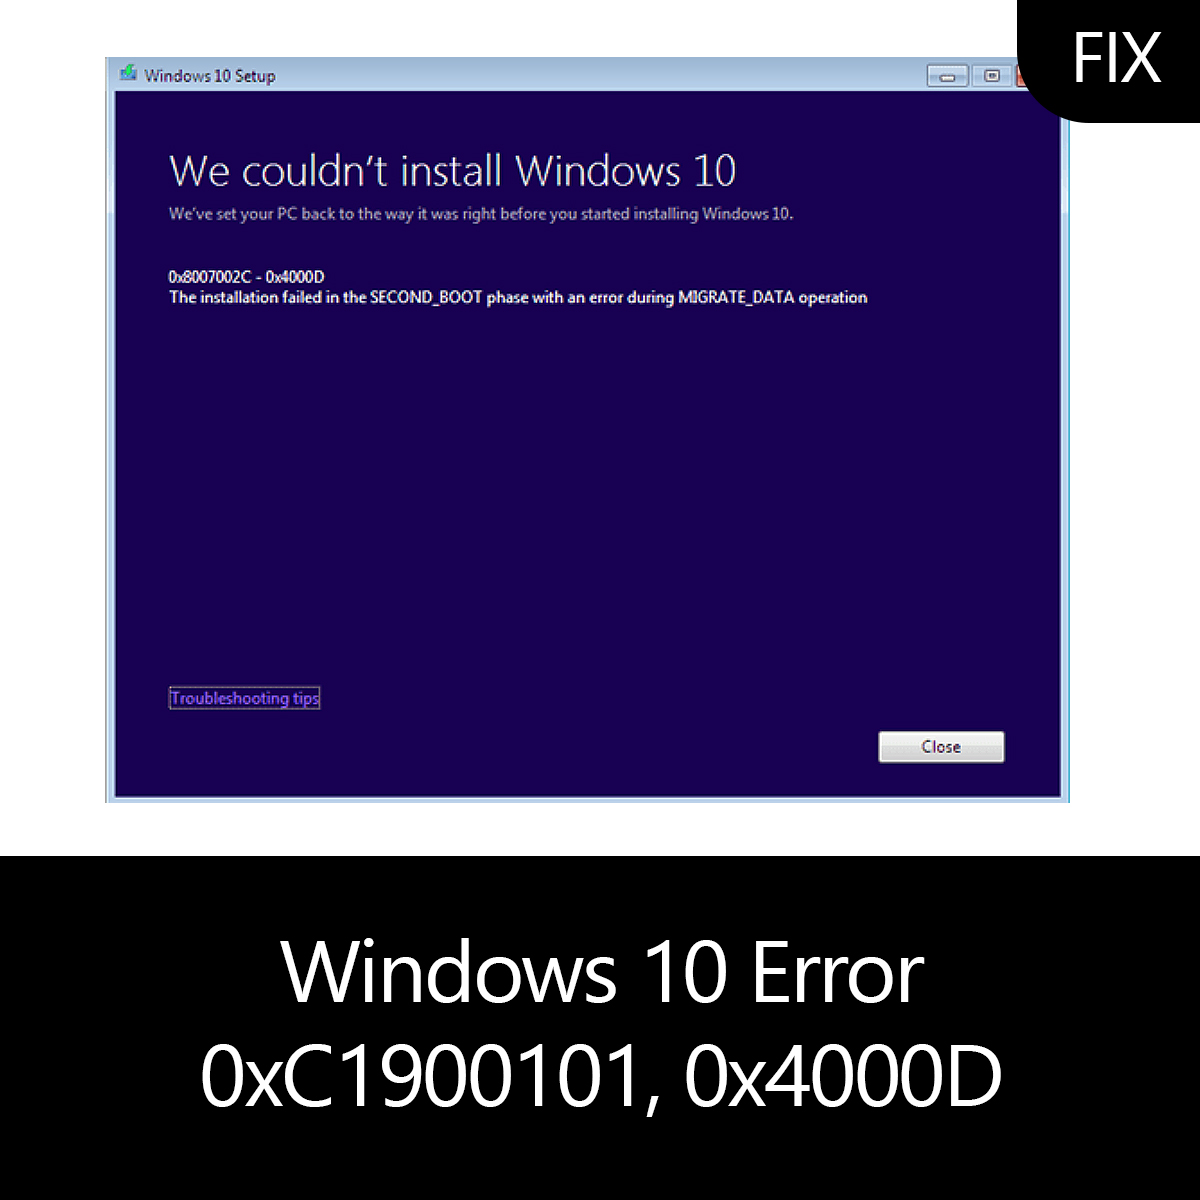 windows 10 migrate data error